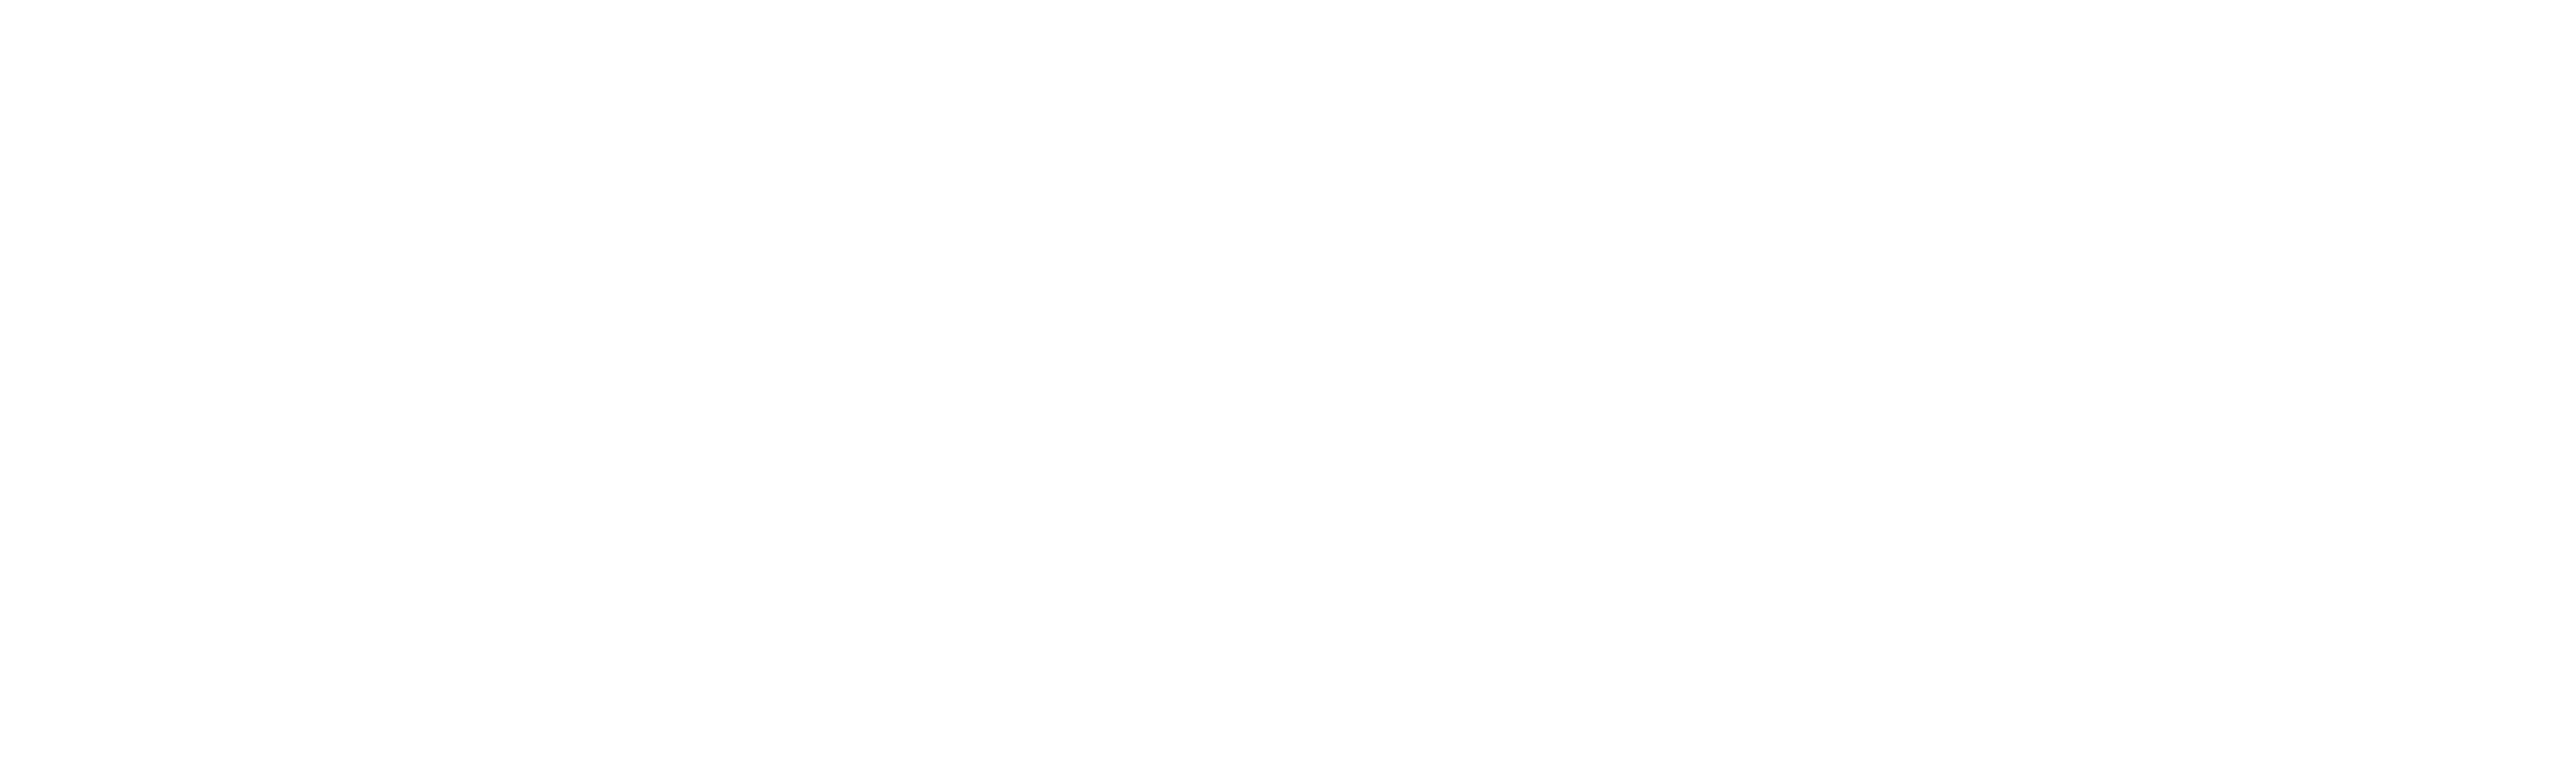 infraray